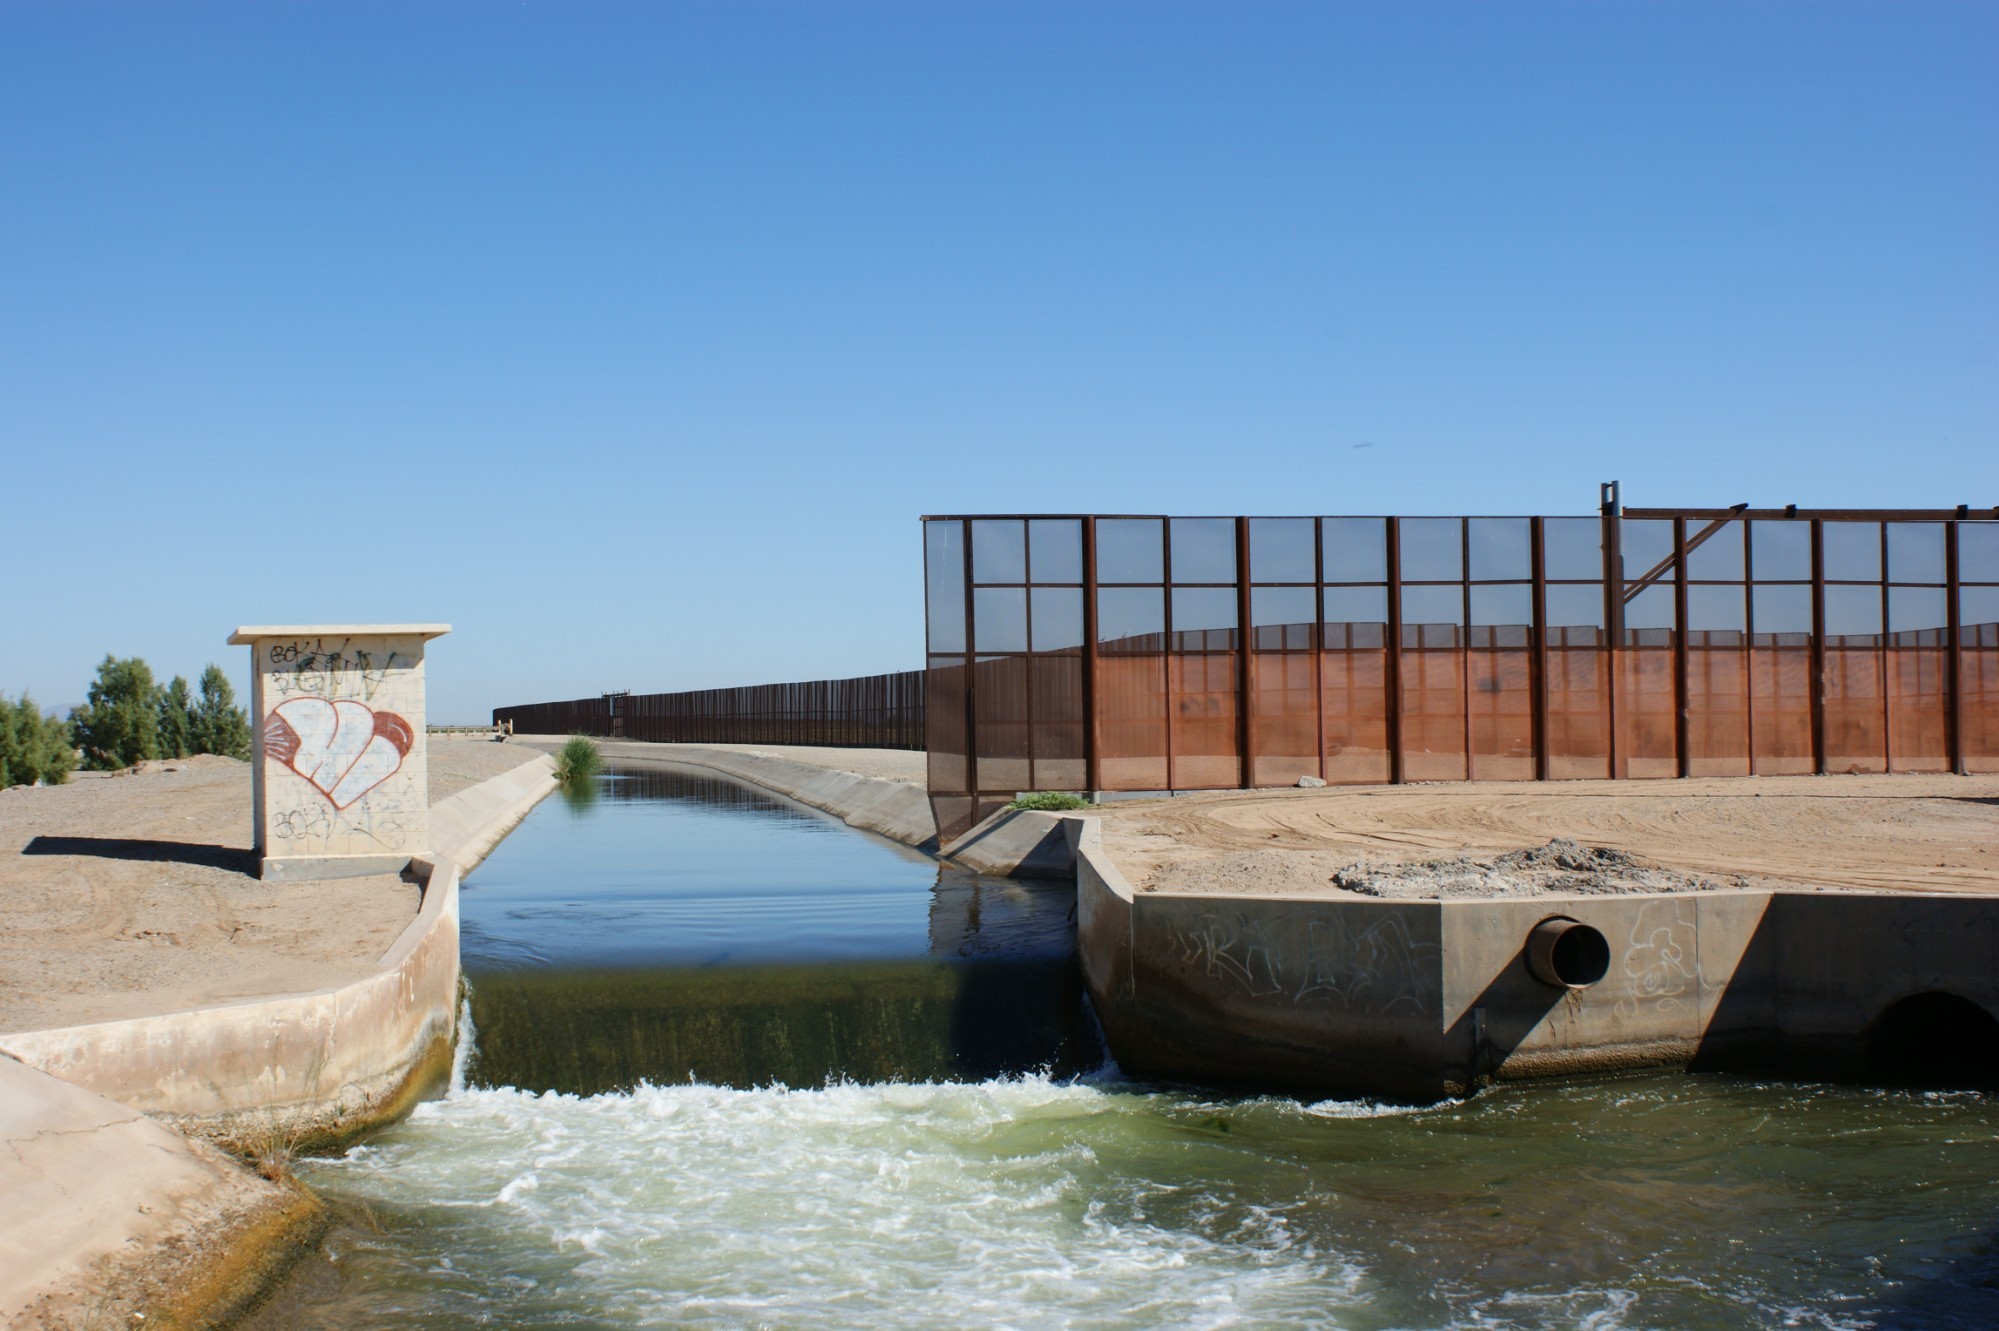 сброс коллекторных вод из США в Мексику за забором территории США